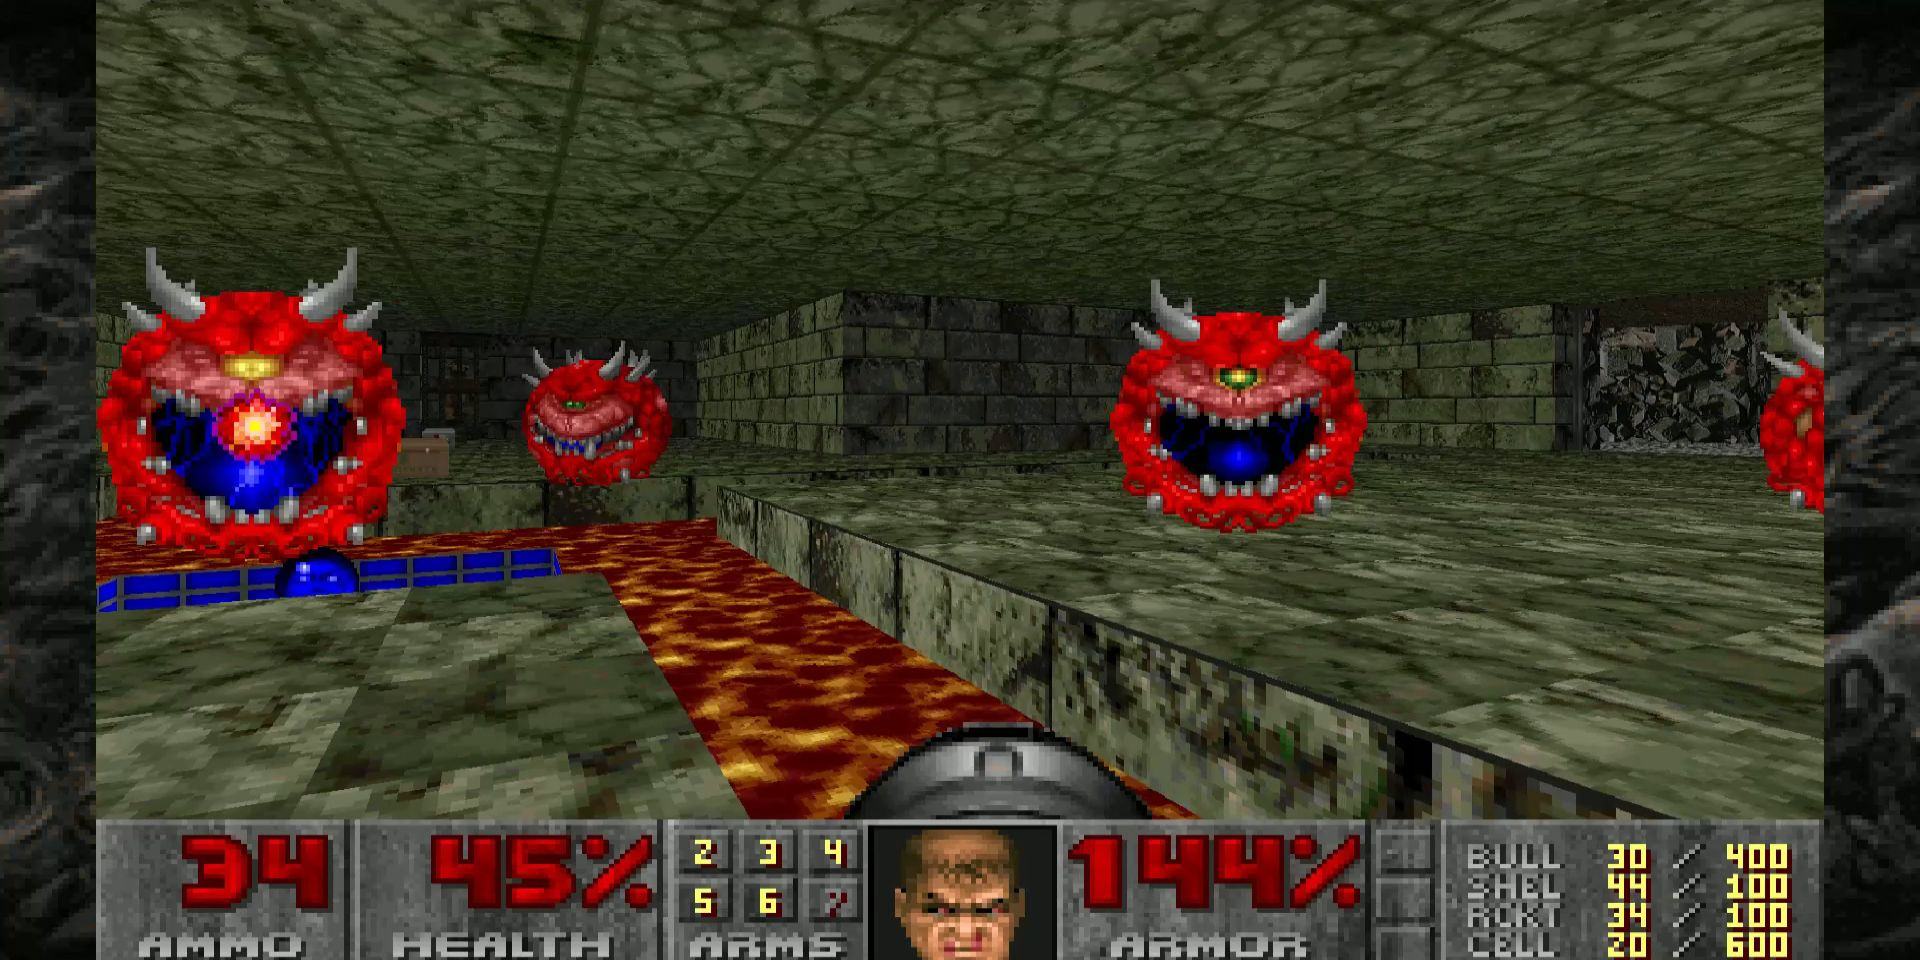 Ảnh chụp màn hình từ DOOM gốc, trong đó người chơi tấn công nhiều Cacodemon bên cạnh hố dung nham.